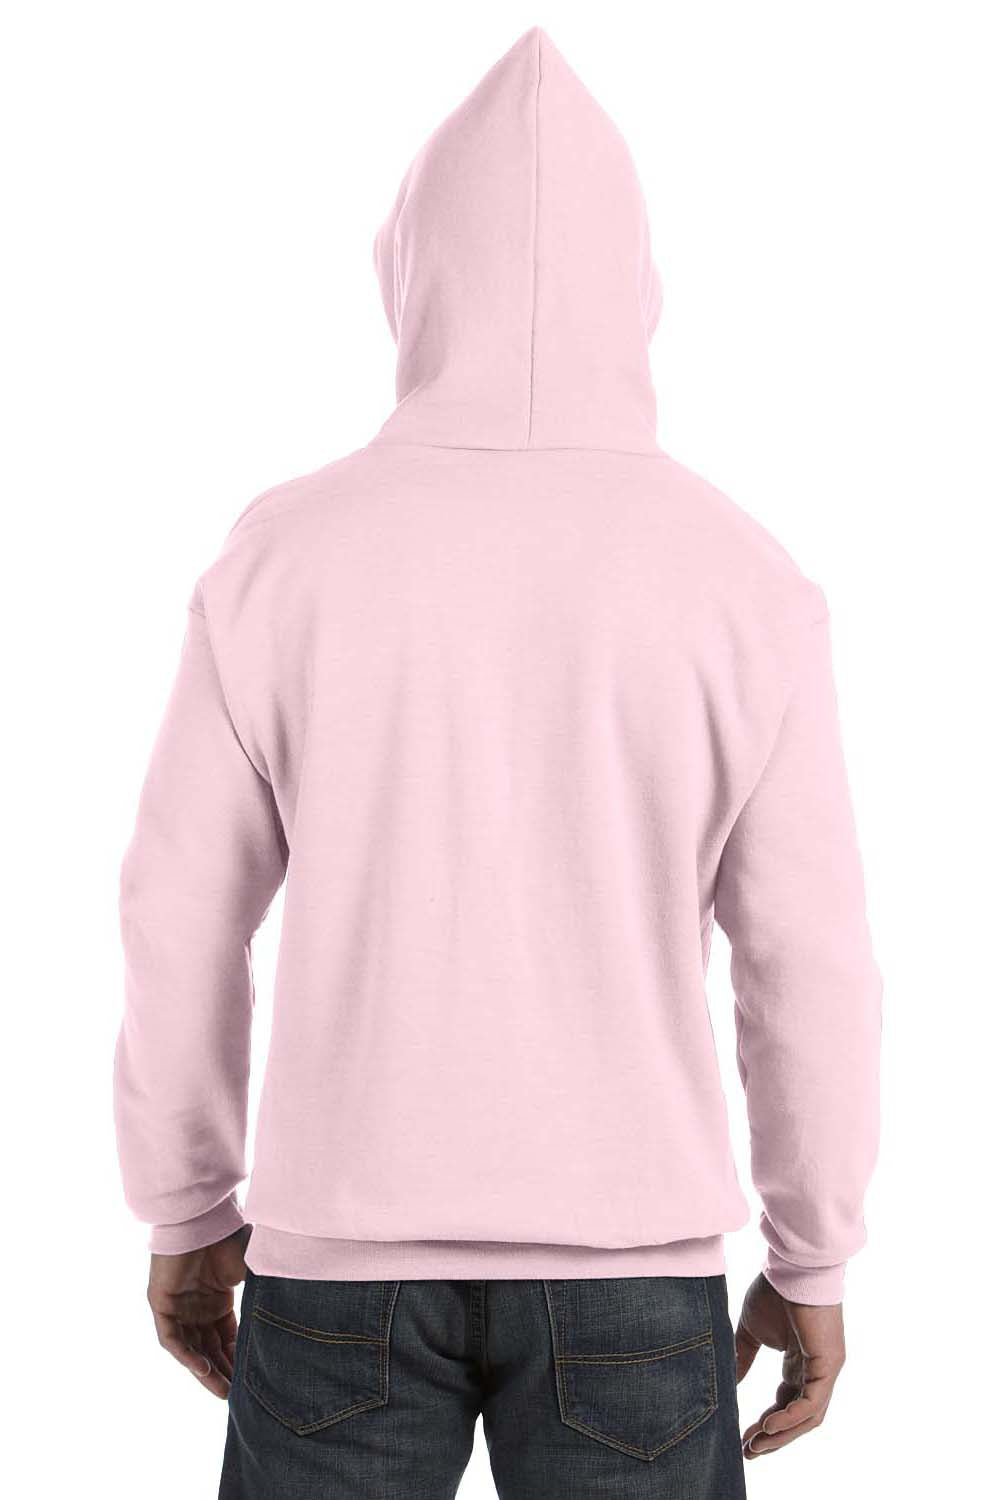 Hanes P170 Mens EcoSmart Print Pro XP Hooded Sweatshirt Hoodie Pale Pink Back